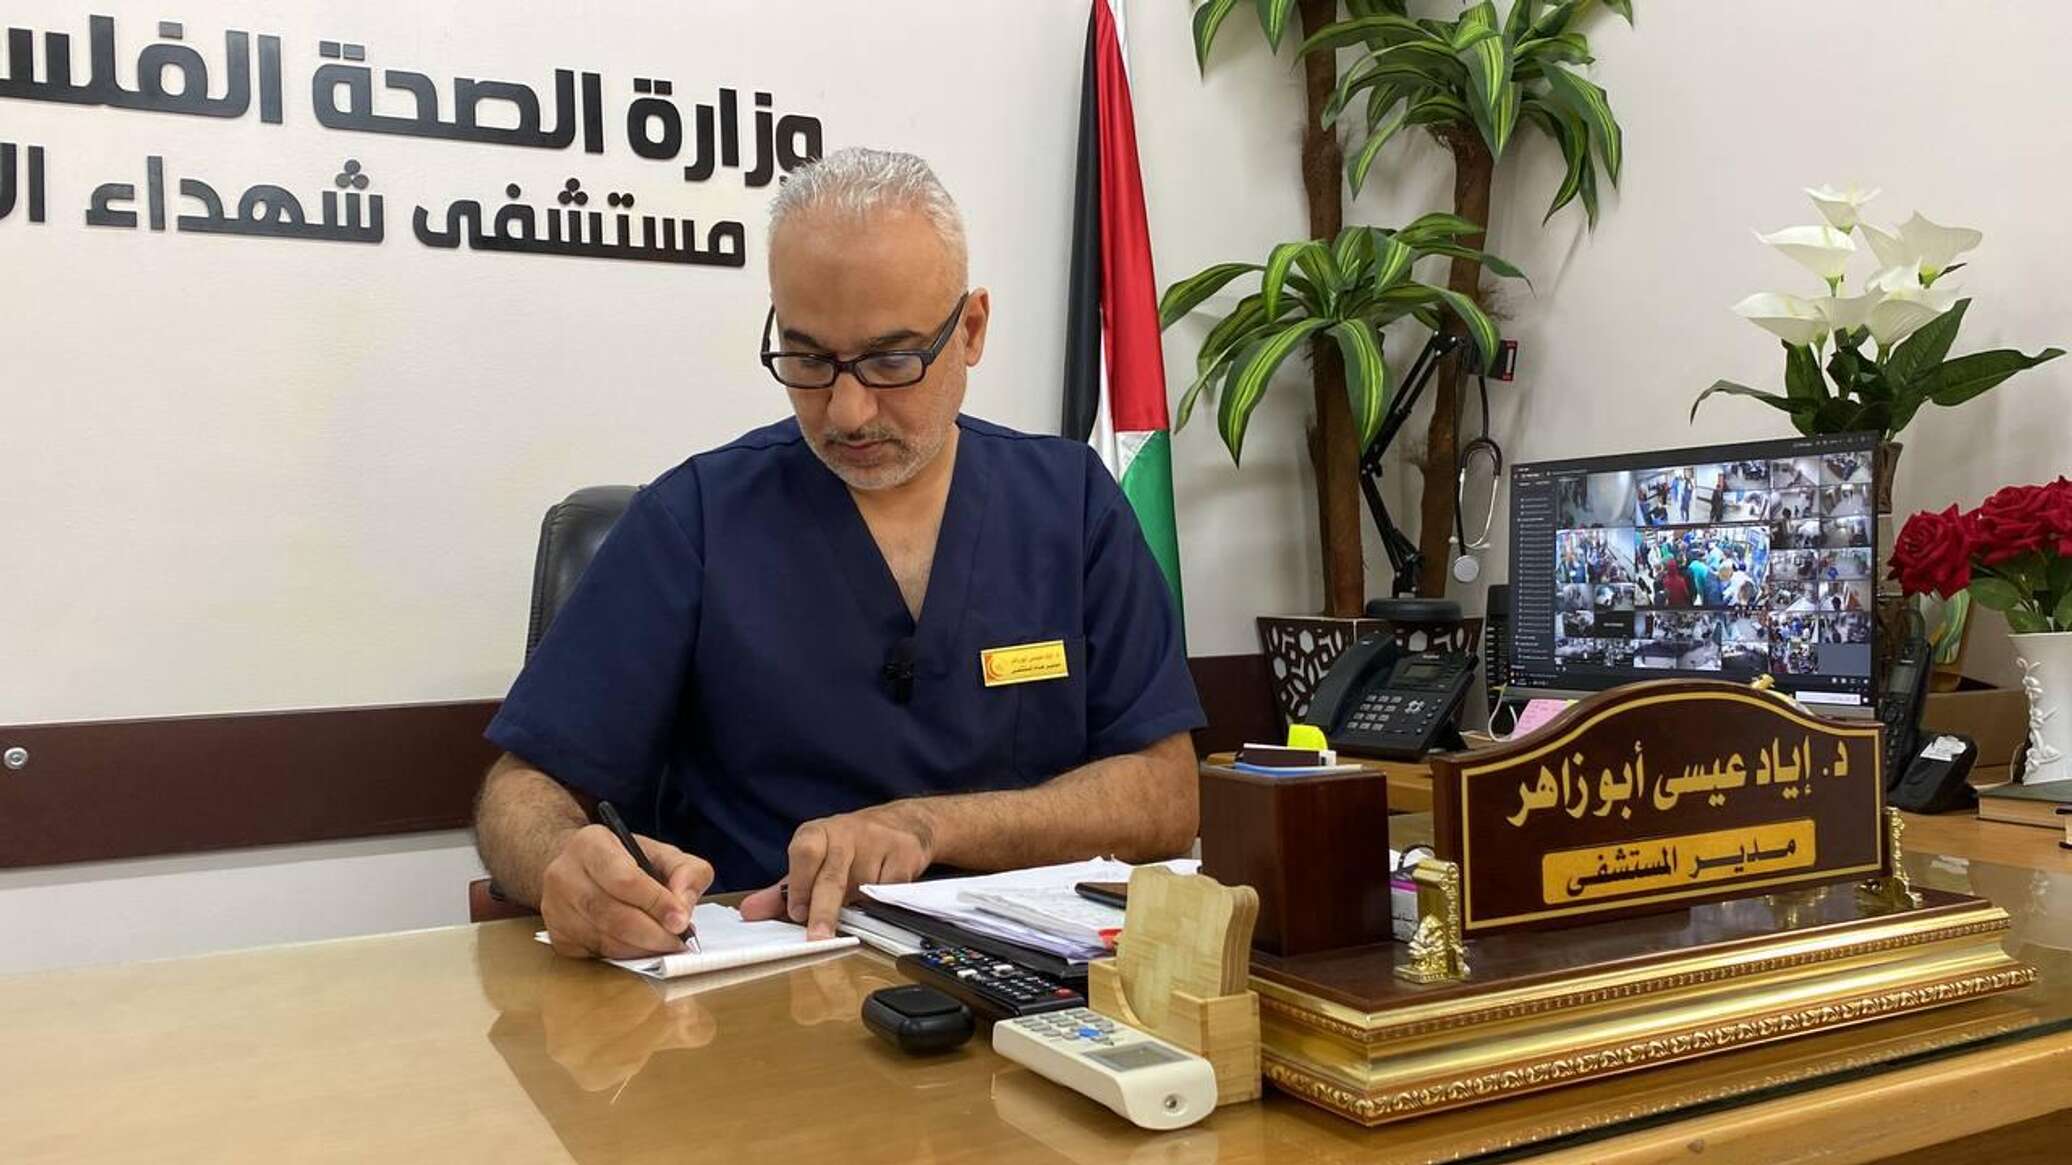 طبيب فلسطيني روسي يتحدث عن نقص الكوادر والمعدات الطبية في "شهداء الأقصى"